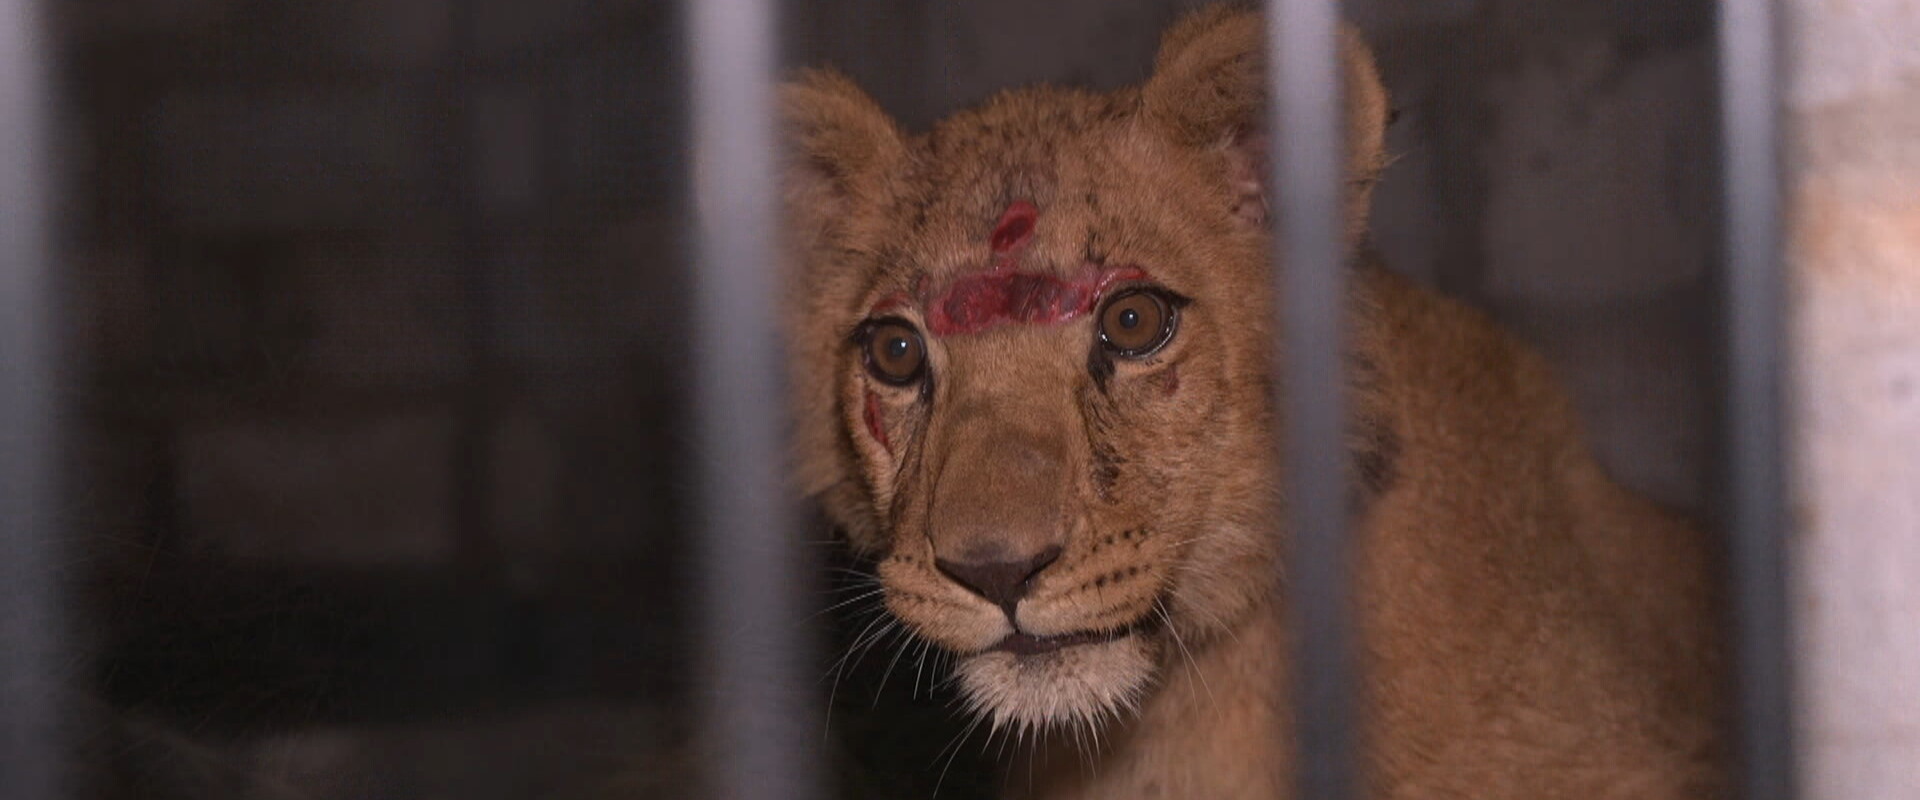 אבו מאלק, גור האריות (צילום: גיא שפירא, חדשות 12)